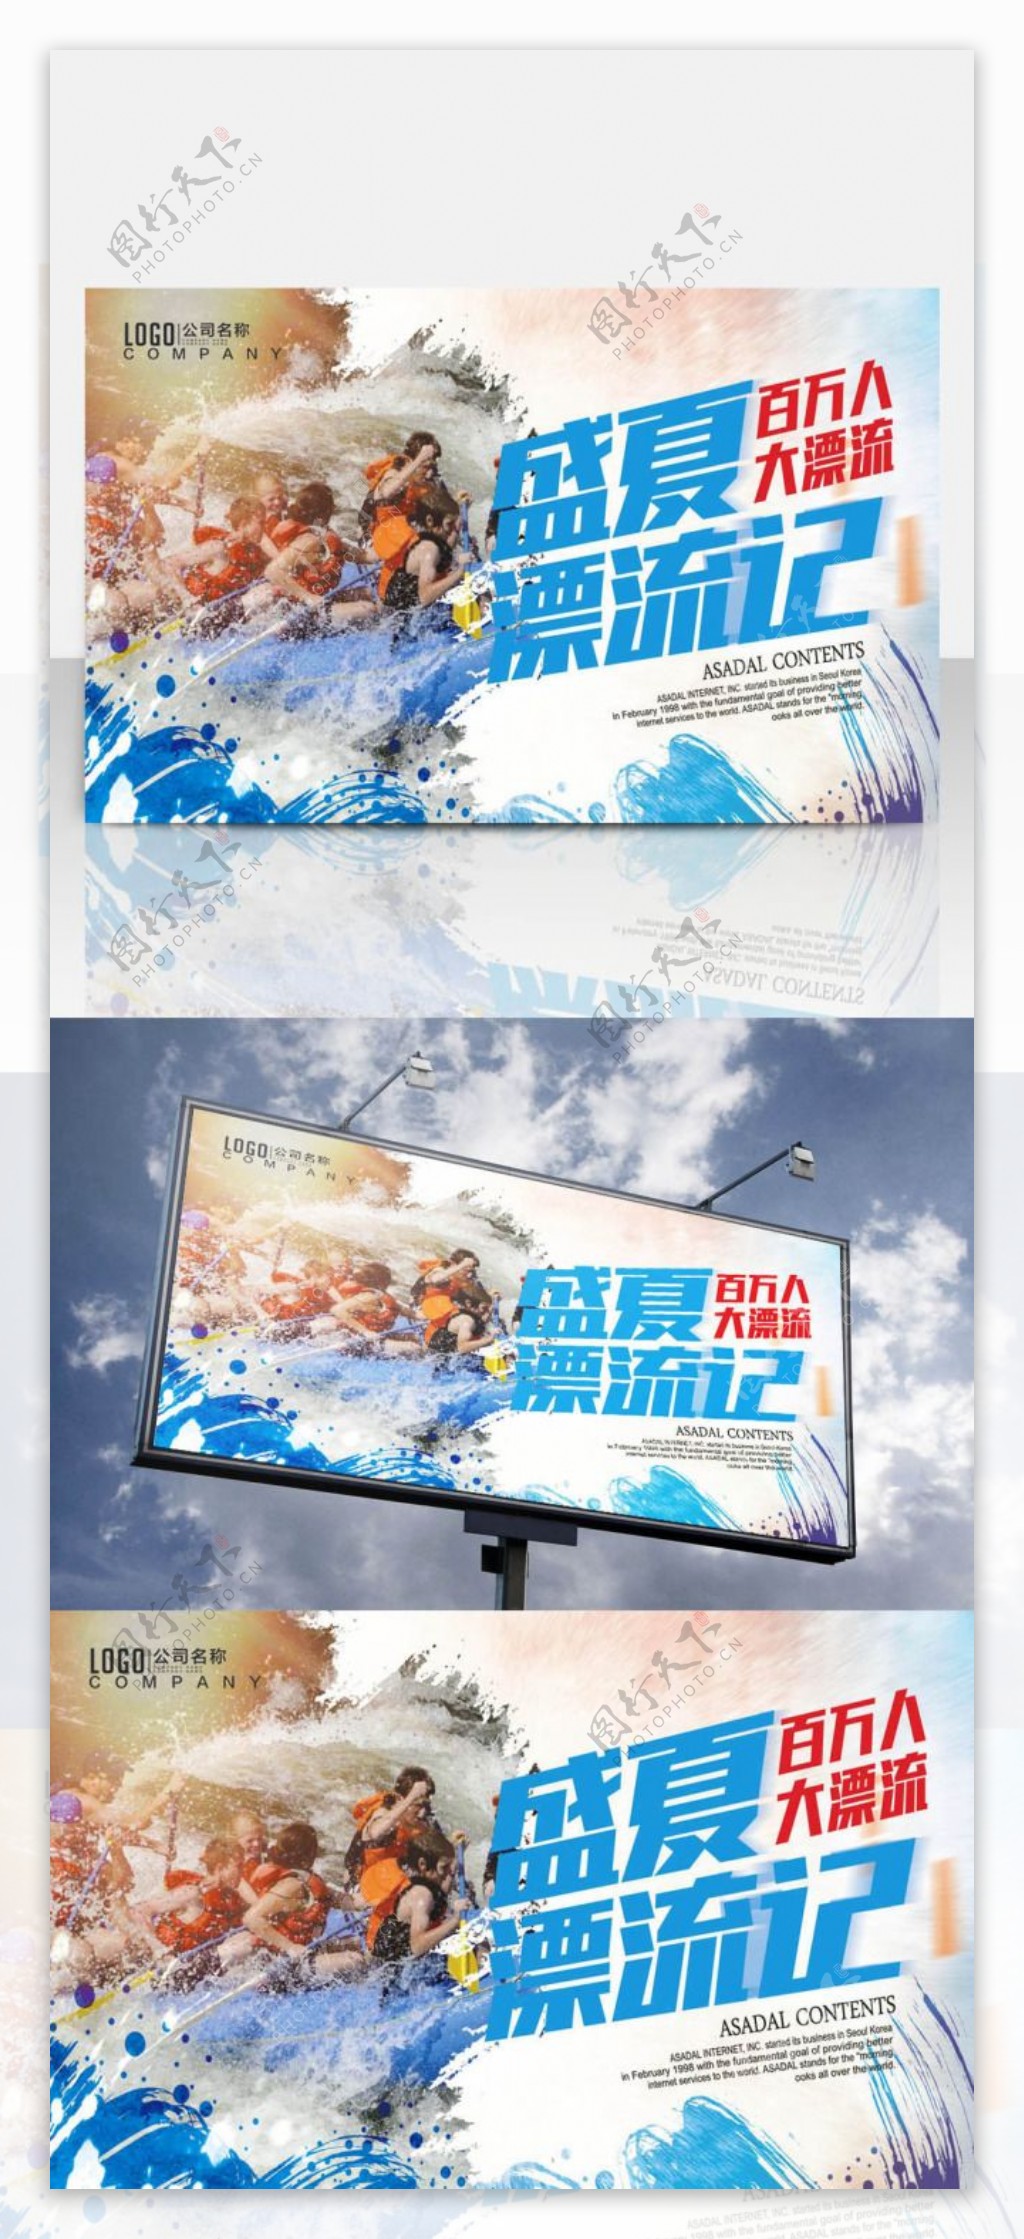 漂流促销广告宣传海报夏日活动激流勇进